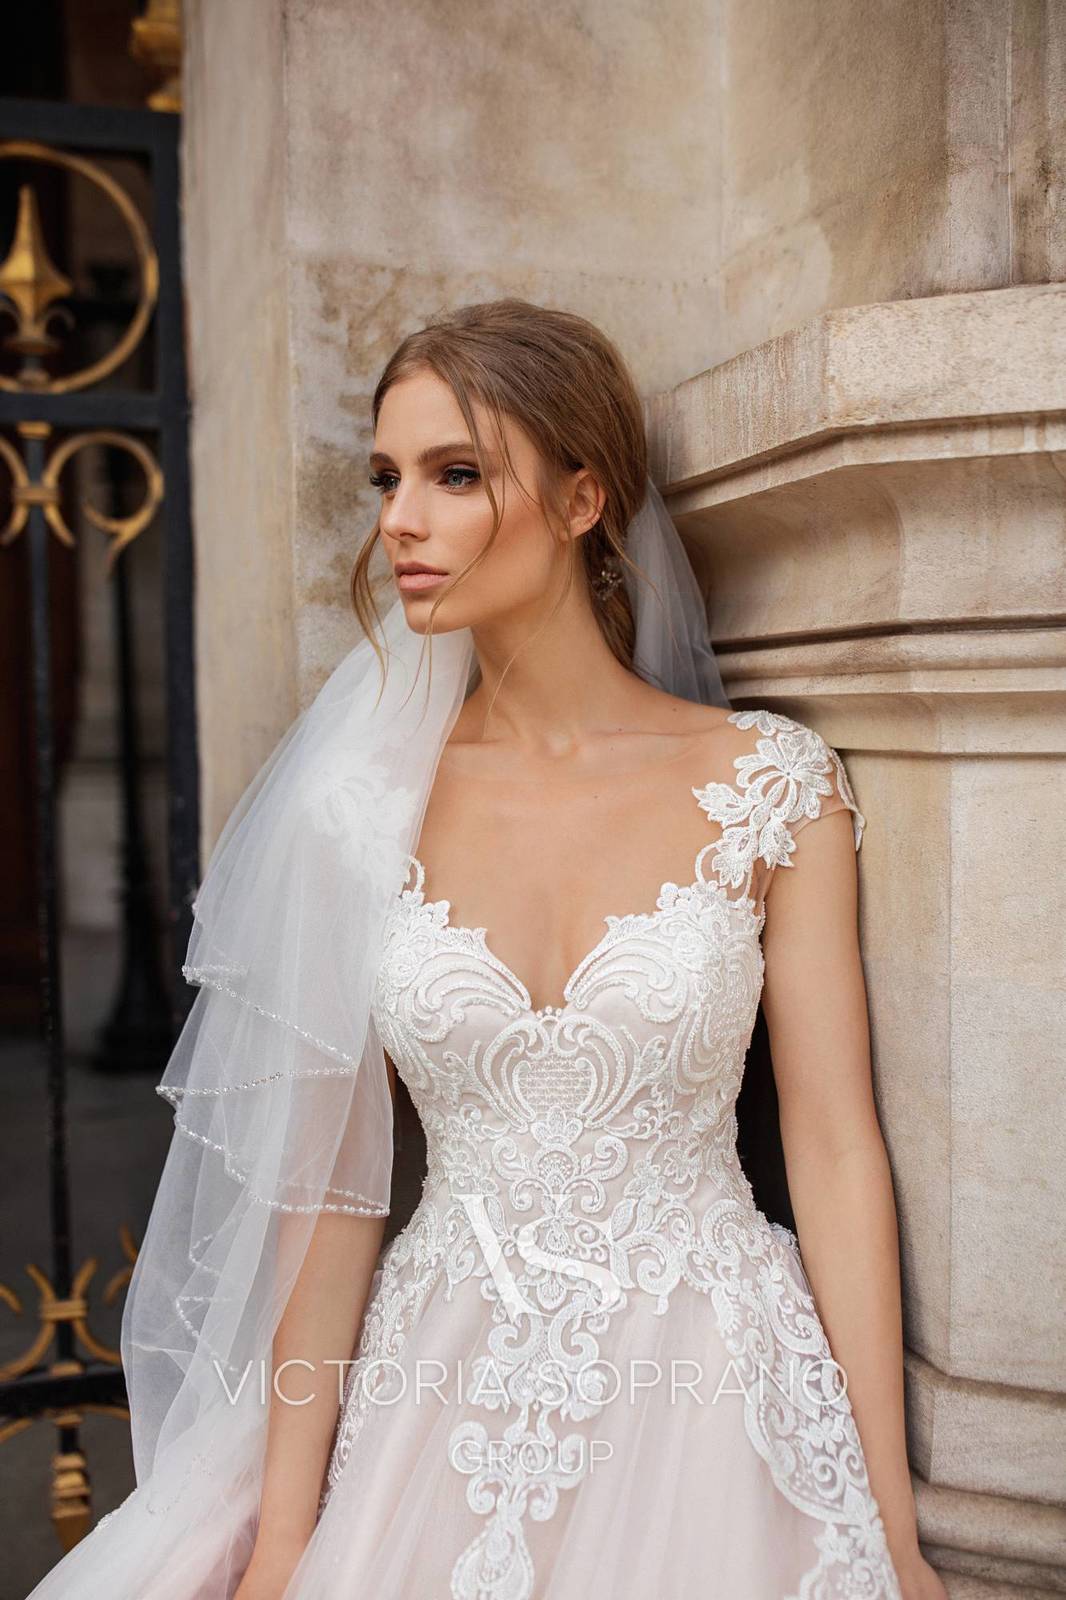 В поисках свадебного платья мечты: новая коллекция Victoria Soprano